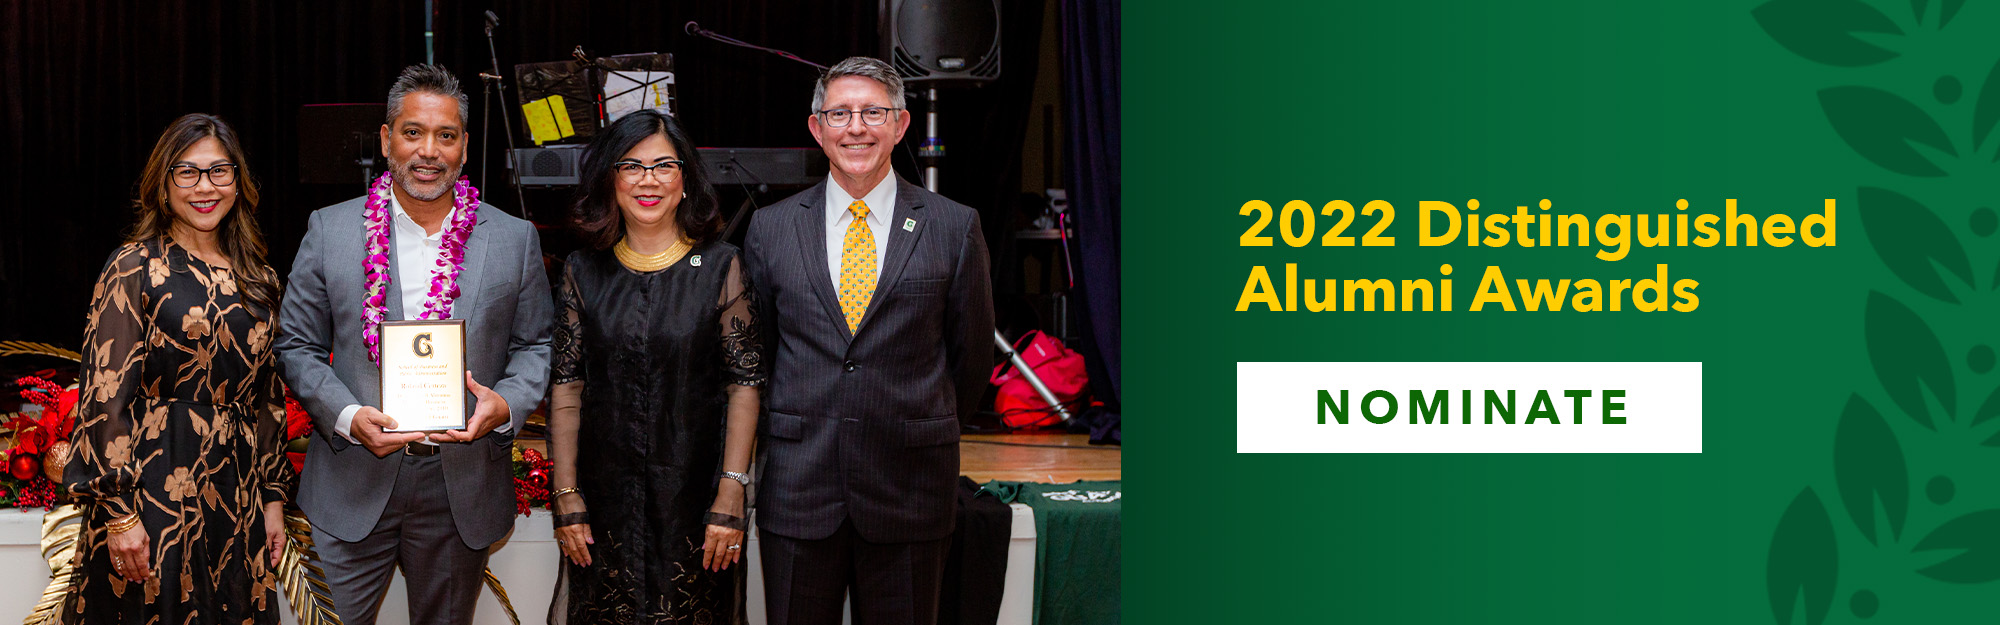 2022 Distinguished Alumni Awards